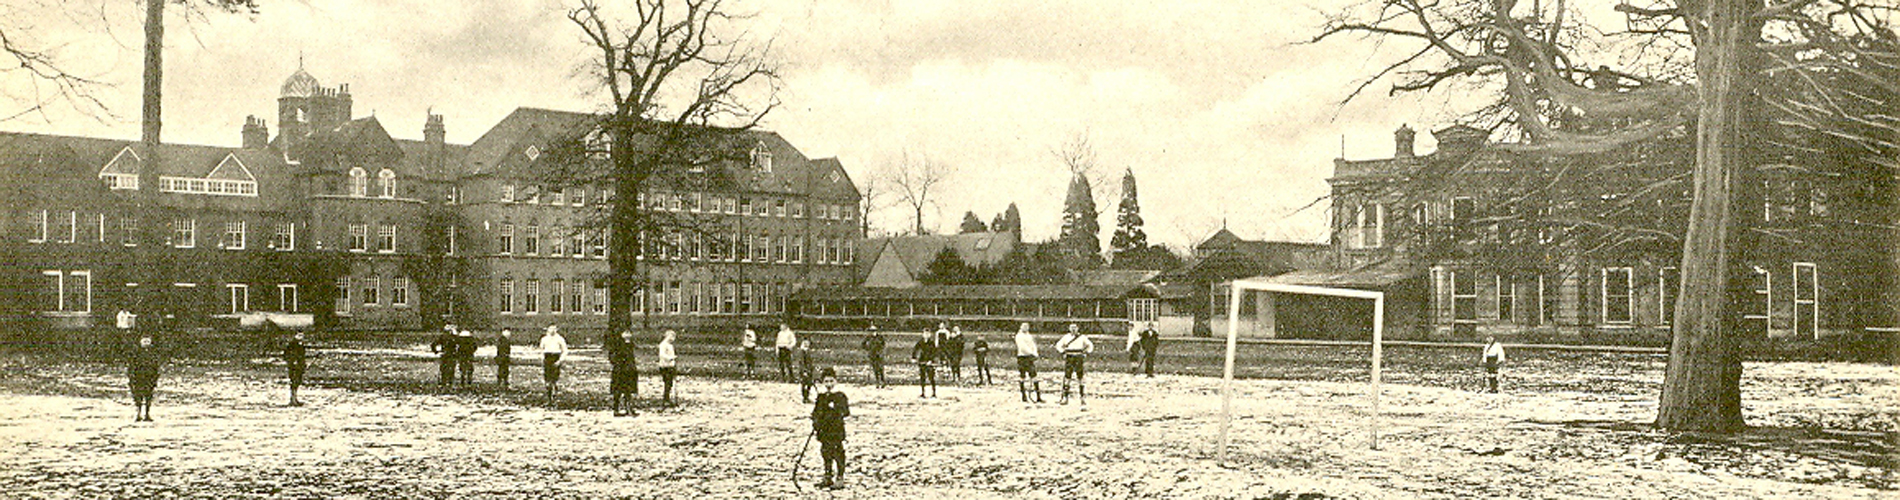 Playground 1904